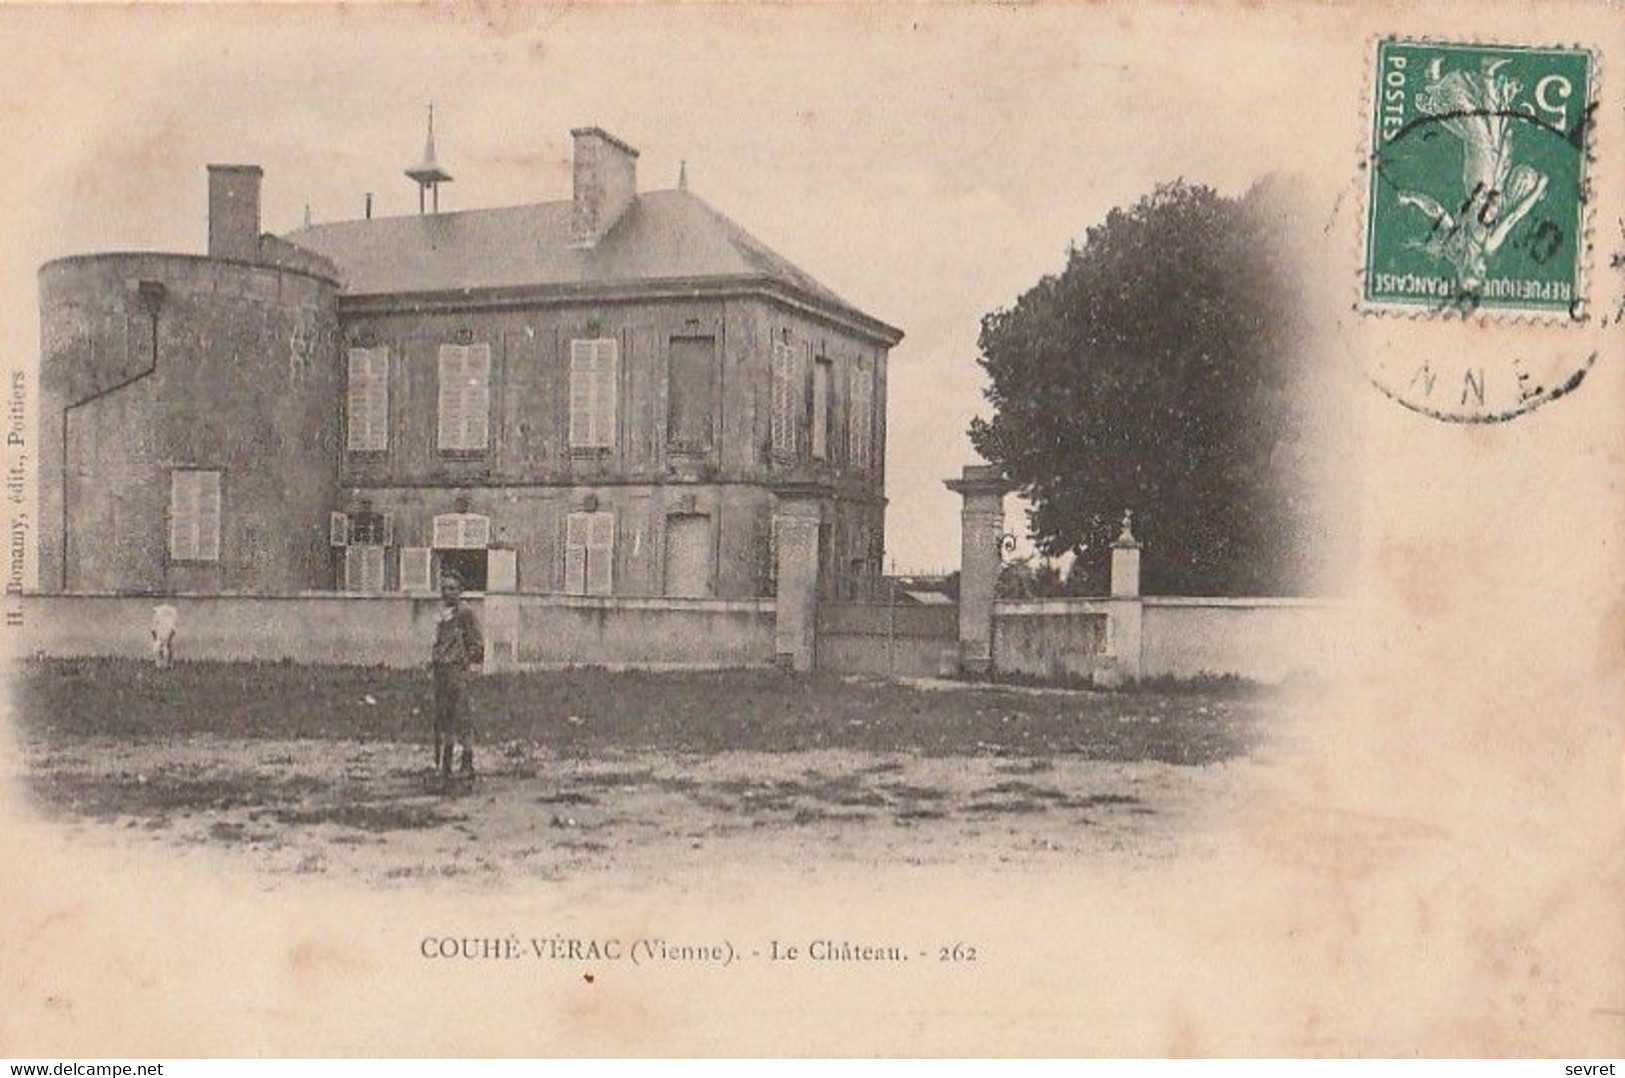 COUHE-VERAC. - Le Château - Couhe